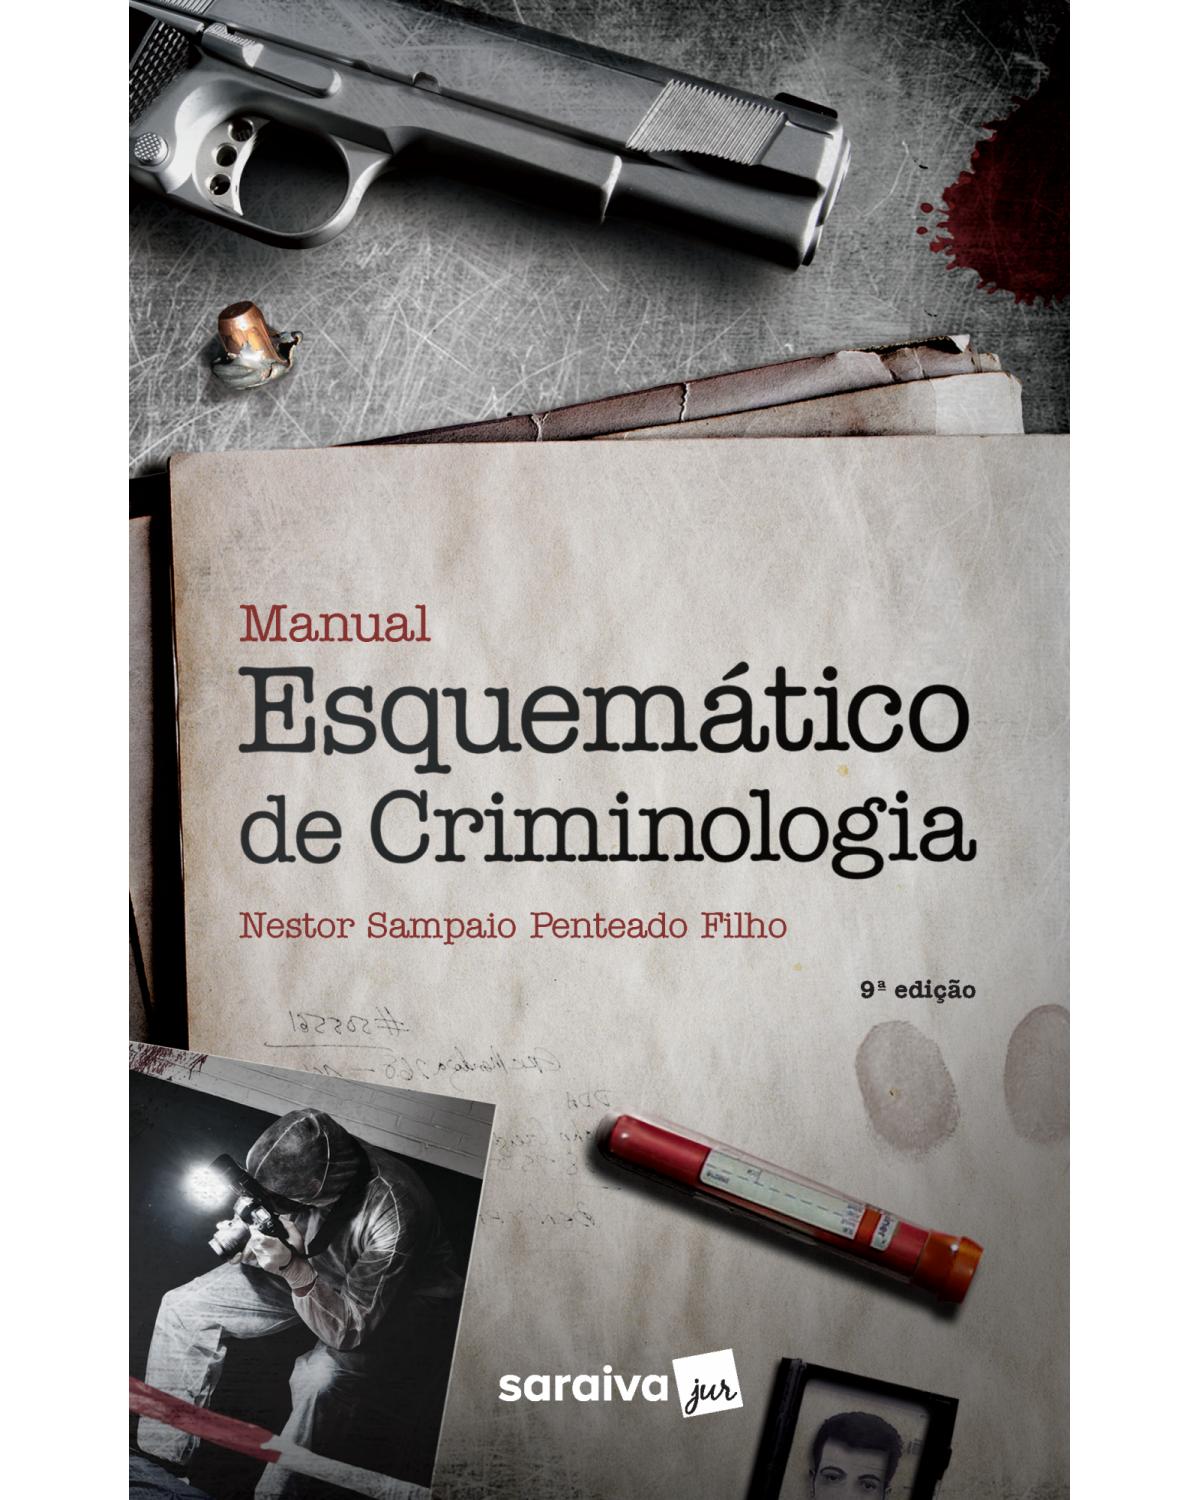 Manual esquemático de criminologia - 9ª Edição | 2018